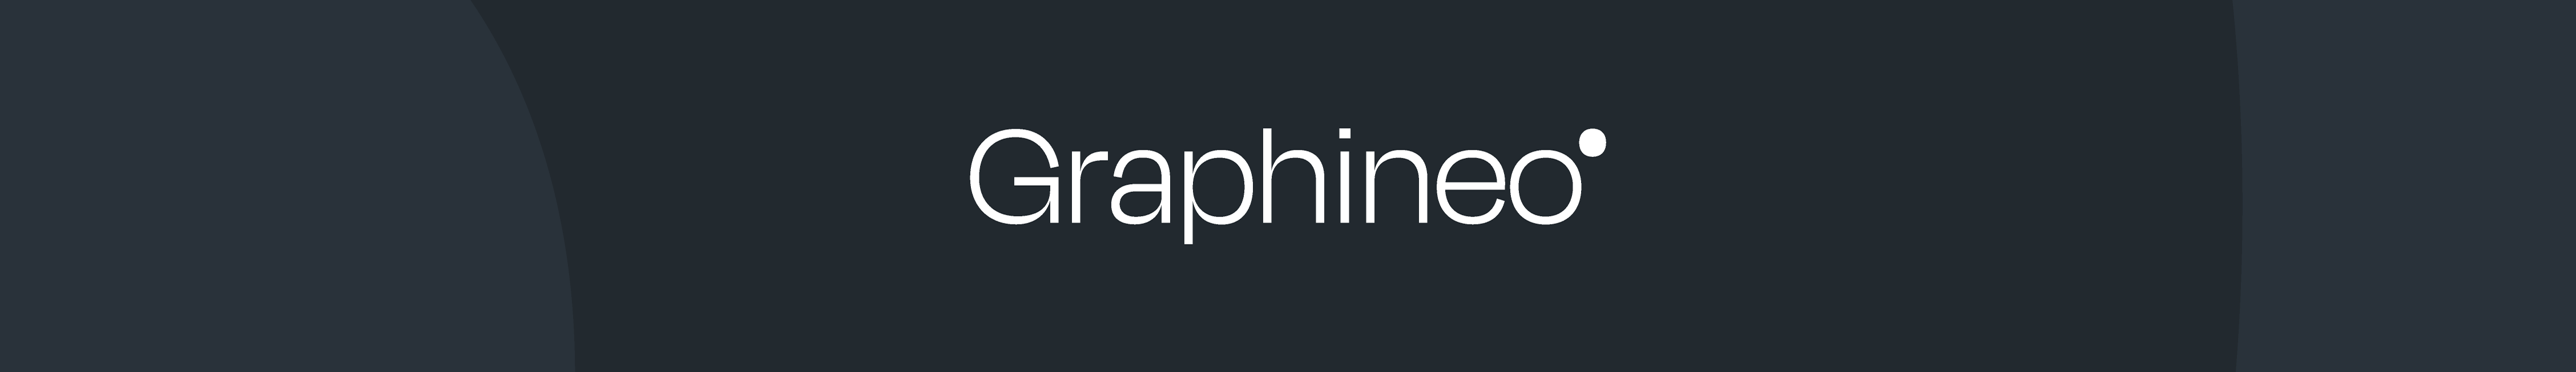 Baner profilu użytkownika Agence Graphineo